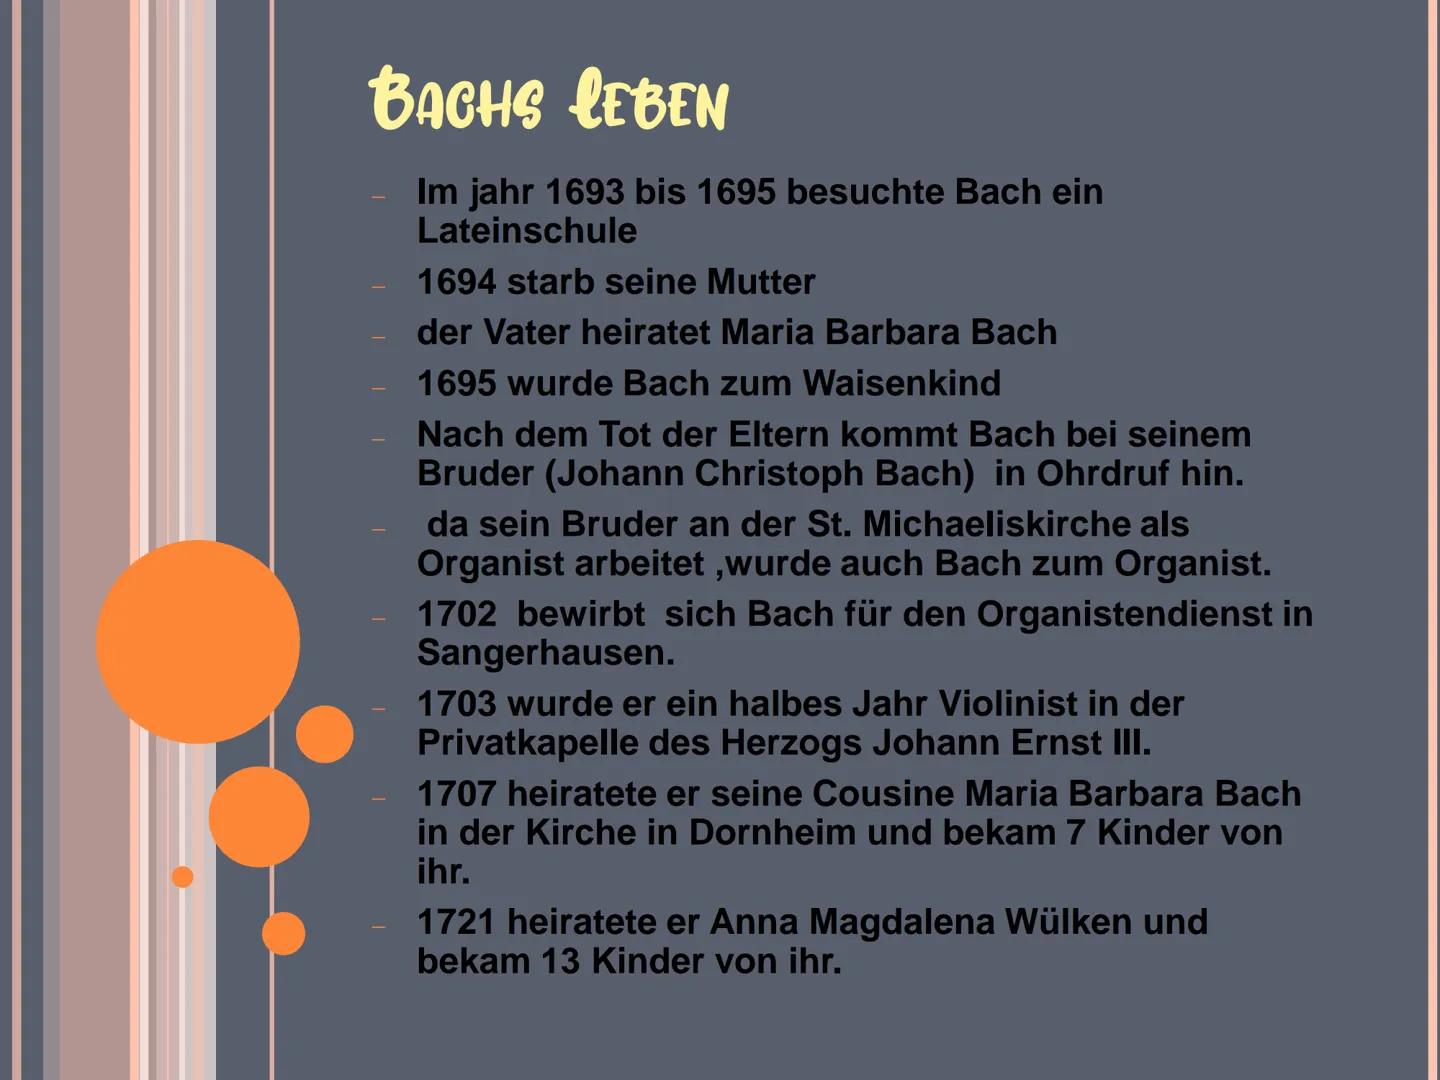 Johann Sebastian Bach INHALTSVERZEICHNIS
❖ Bachs Steckbrief
❖ Bachs Leben
◆ Die berühmtesten Werke
❖ Quelle BACHS STECKBRIEF
❖ Vorname: Joha